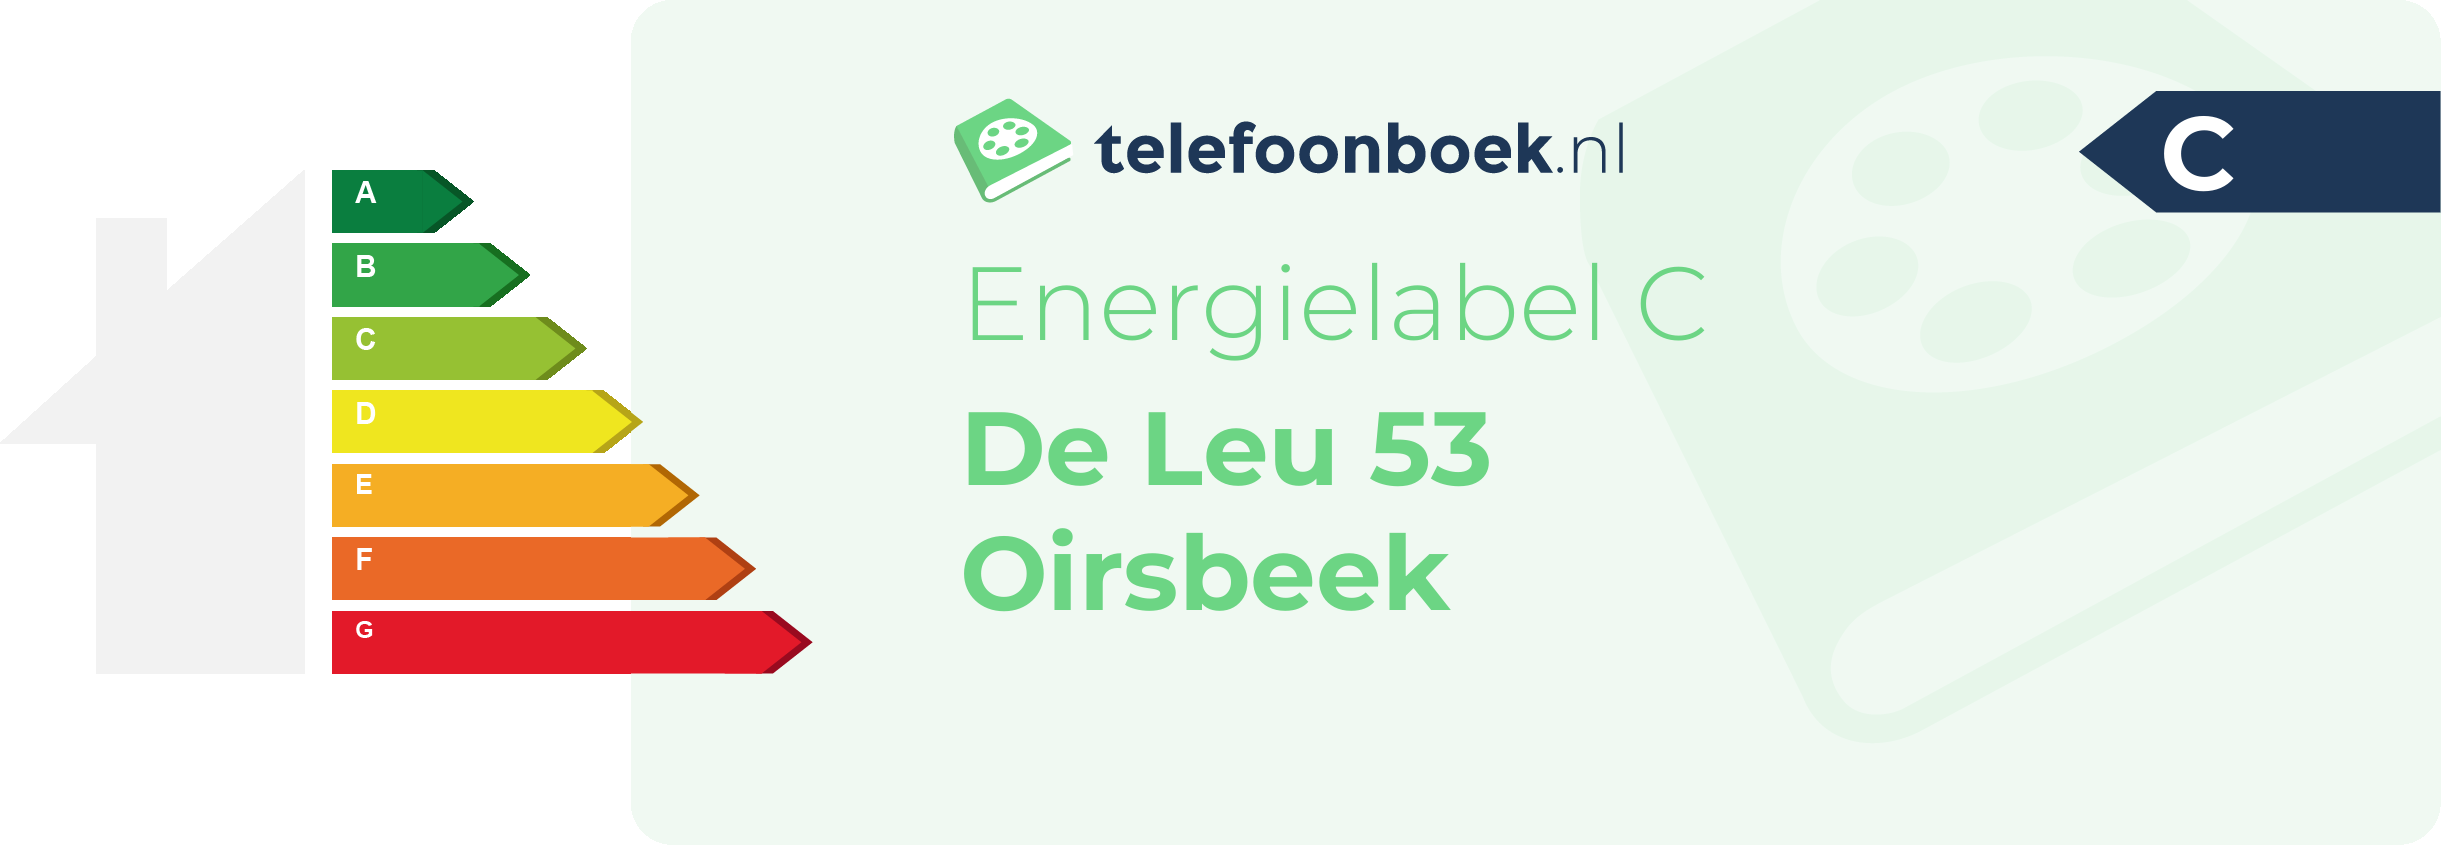 Energielabel De Leu 53 Oirsbeek